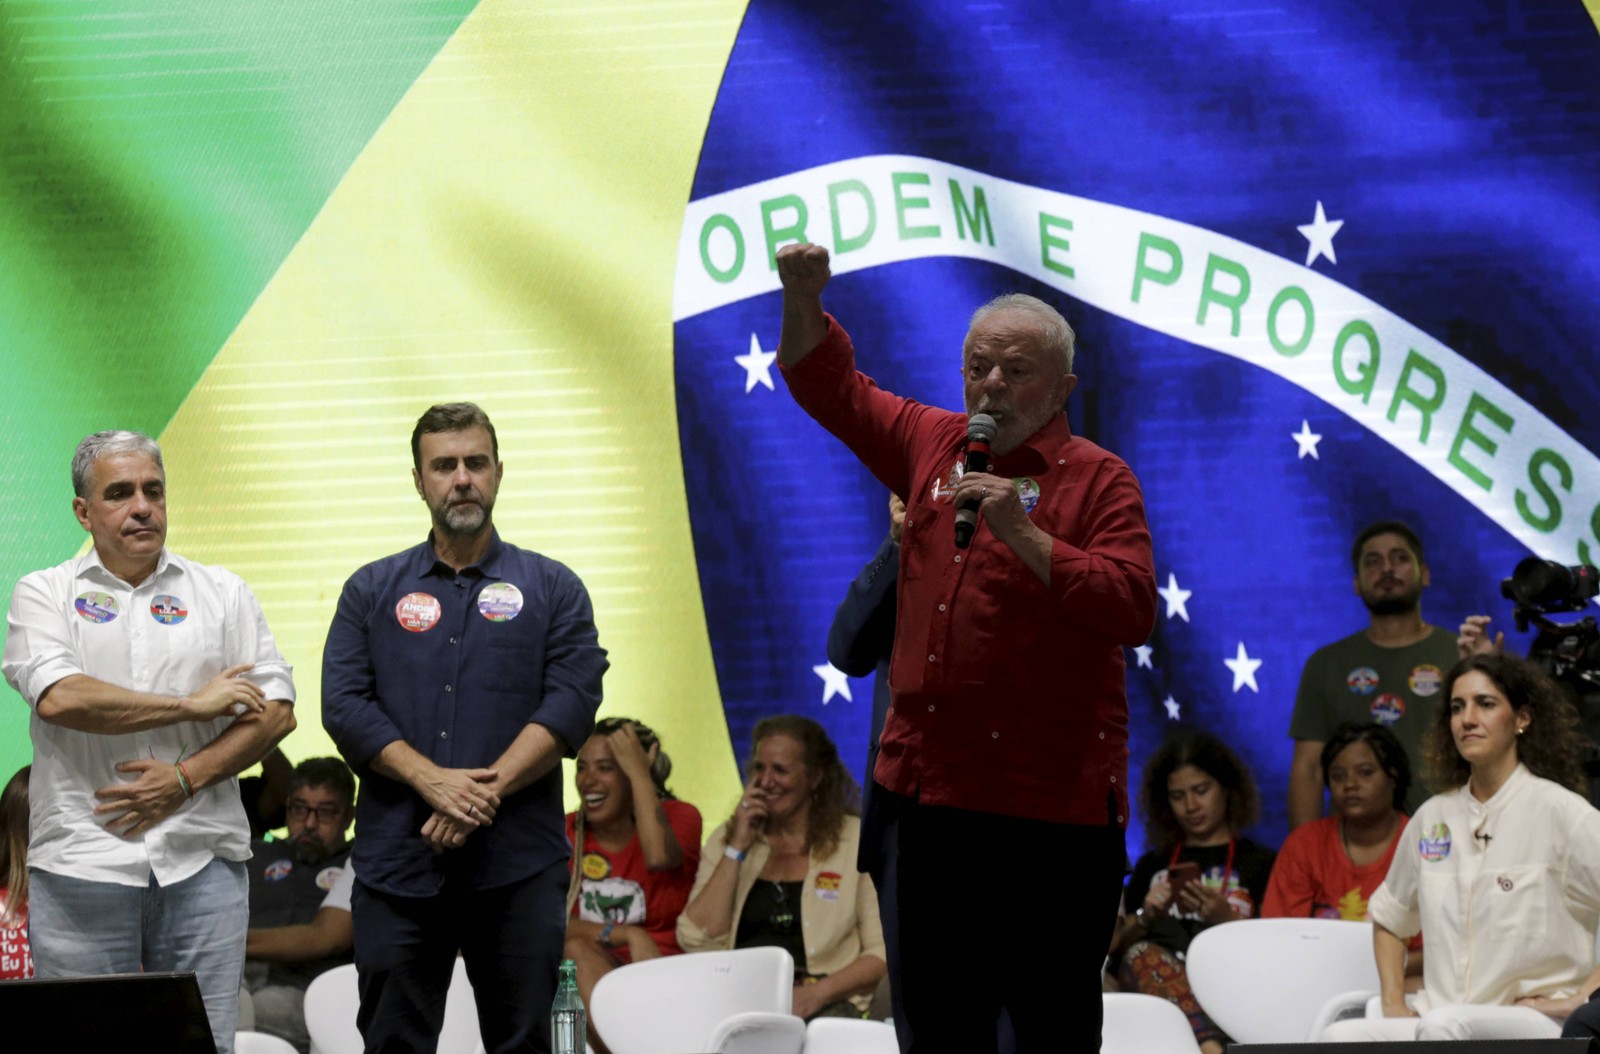 Marcelo Freixo (PSB) esteve no palanque junto com Lula (PT) em compromisso em Nova Iguaçu, Baixada Fluminense — Foto: Domingos Peixoto/Agência O Globo/08-09-2022